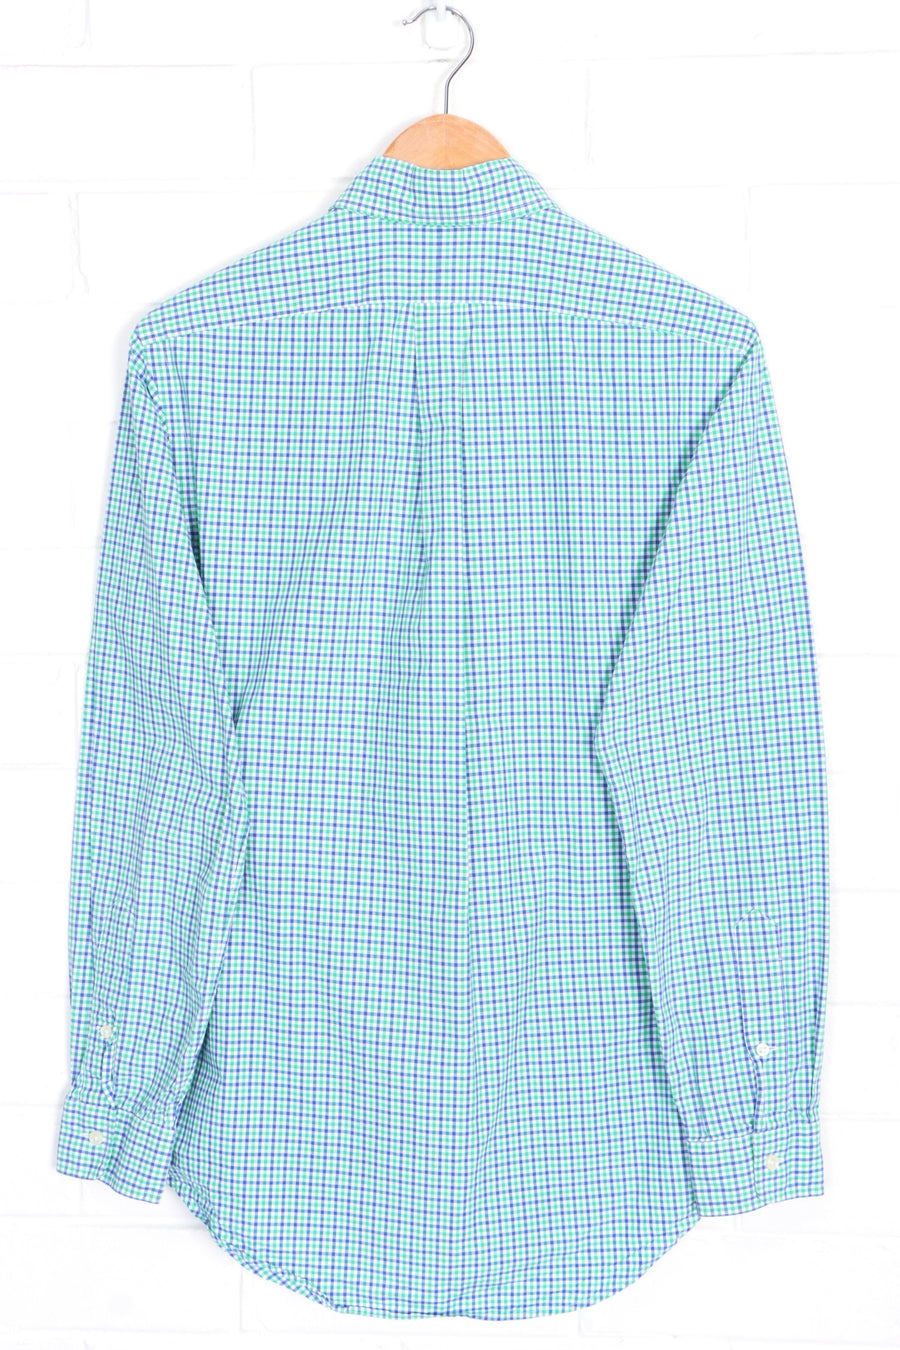 RALPH LAUREN Blue & Green Gingham Button Up Shirt (S)